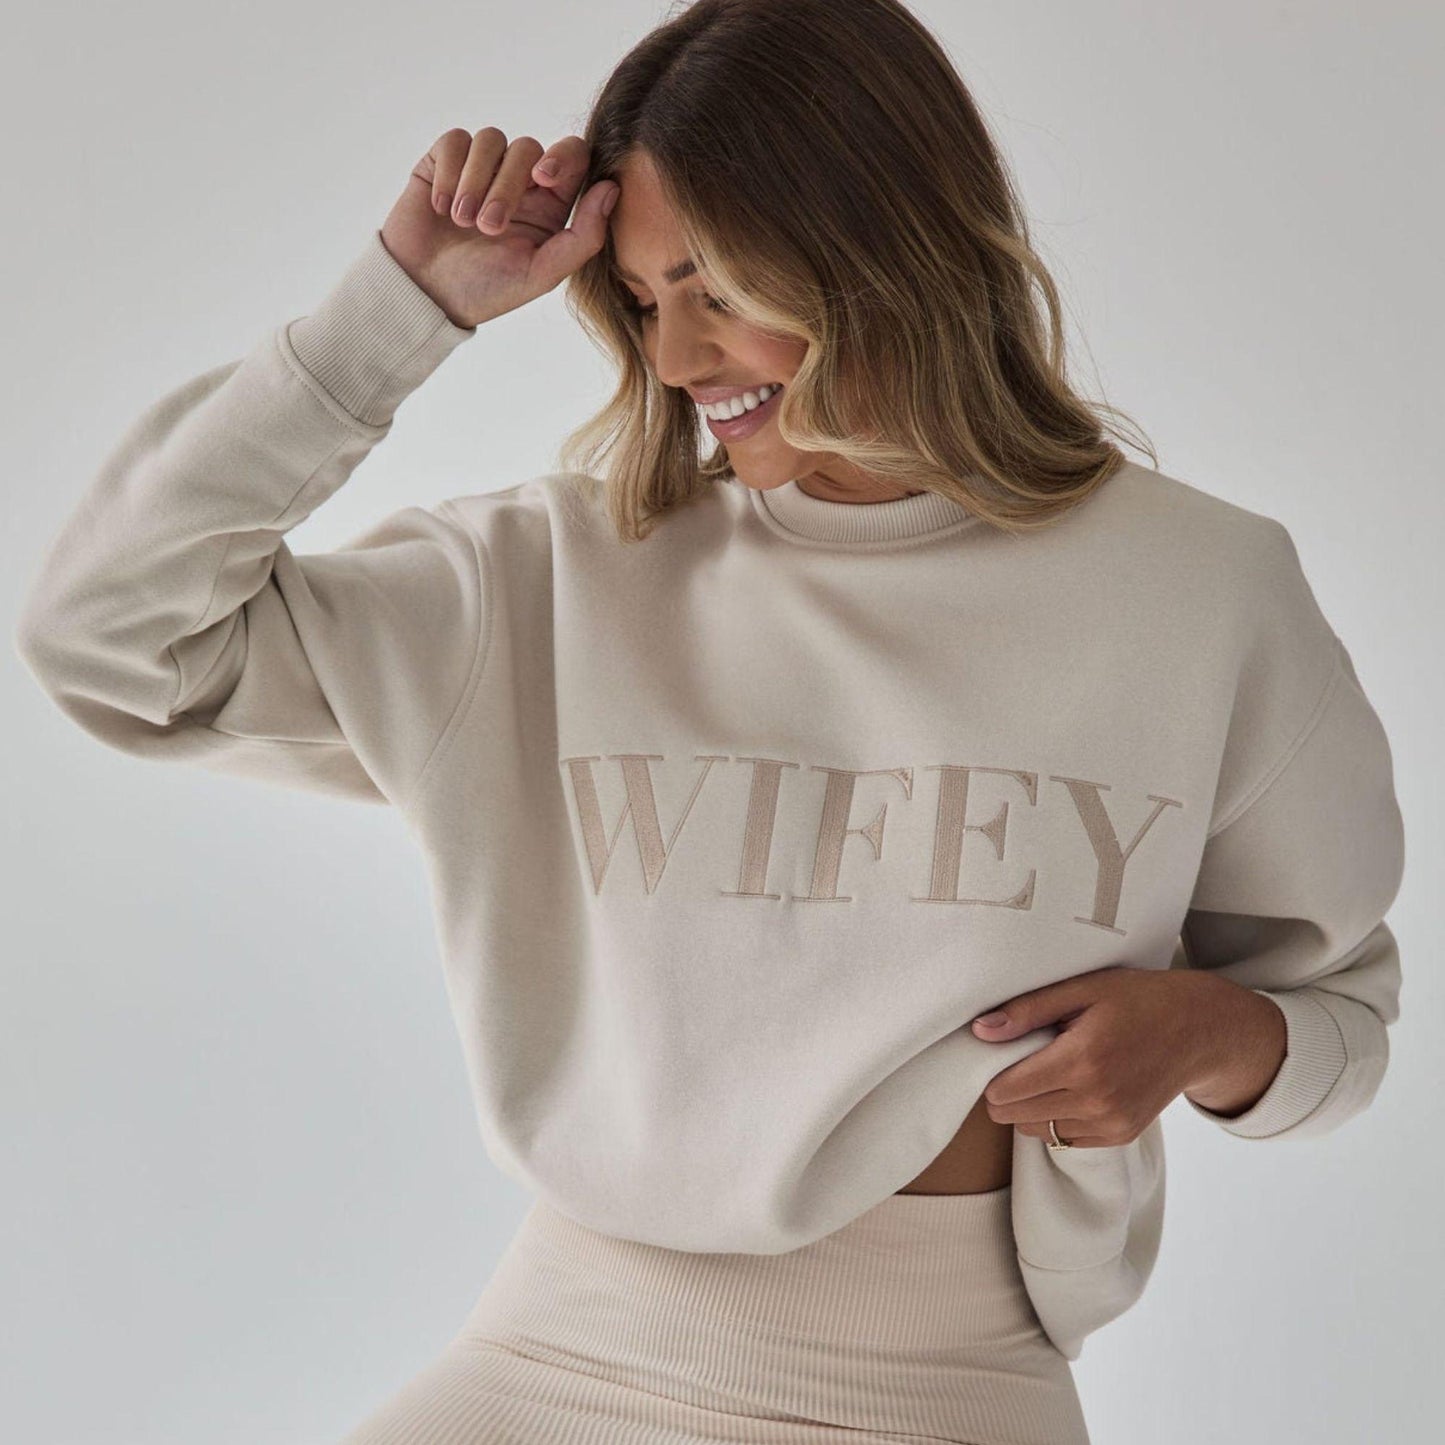 Wifey Sweatshirt Bestickt - Geschenk für Frauchen - GiftHaus